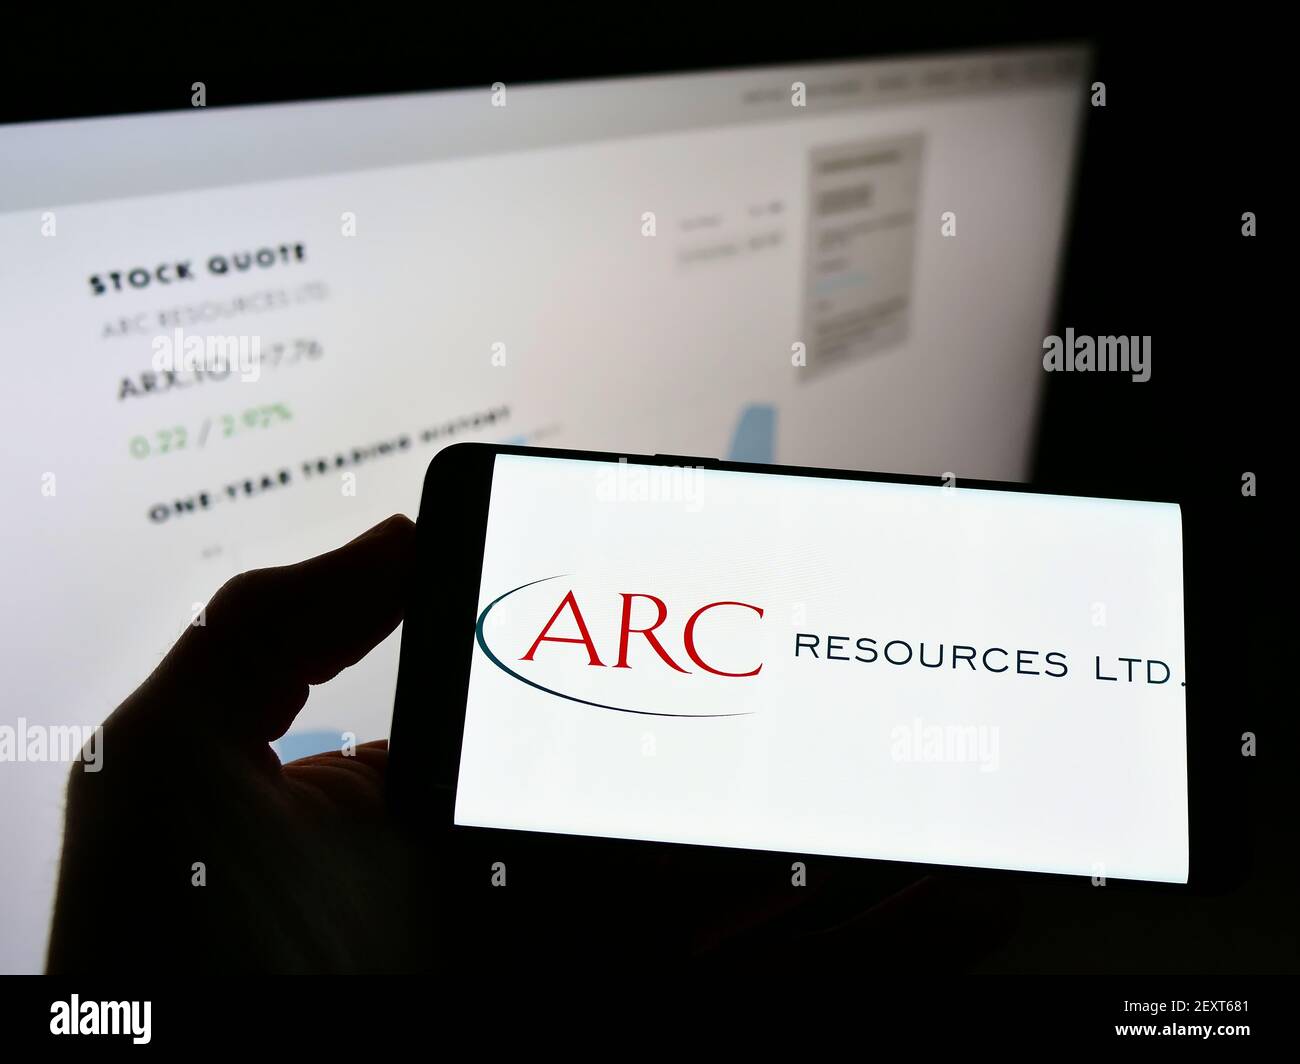 Persona che detiene smartphone con il logo della società canadese di petrolio e gas ARC Resources Ltd. Sullo schermo di fronte al sito web. Mettere a fuoco il display del telefono. Foto Stock